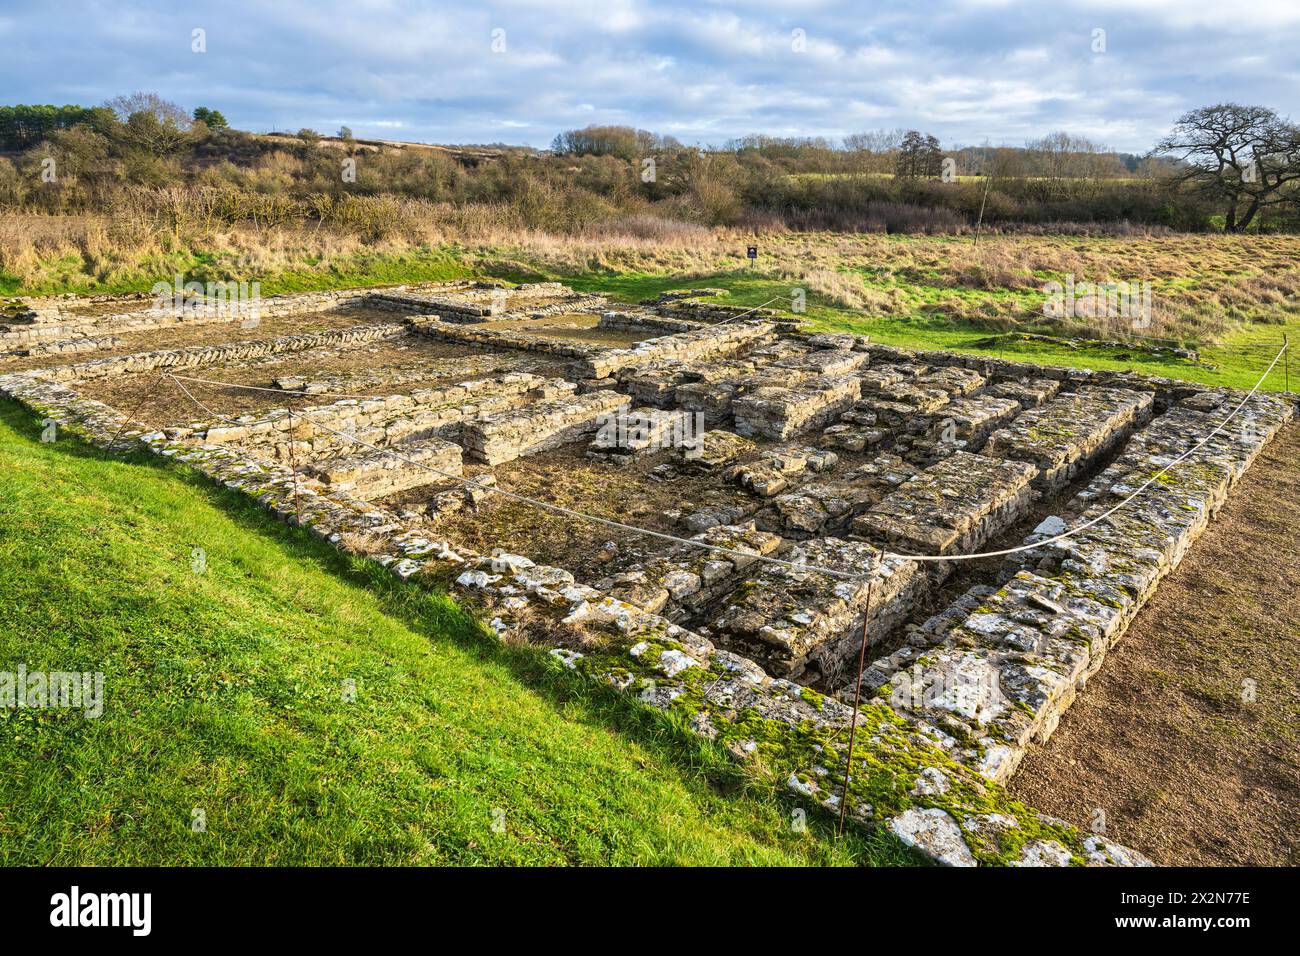 Überreste der North Leigh Roman Villa, eine römische Hofvilla am Ufer des Flusses Evenlode in Oxfordshire, England, Großbritannien Stockfoto